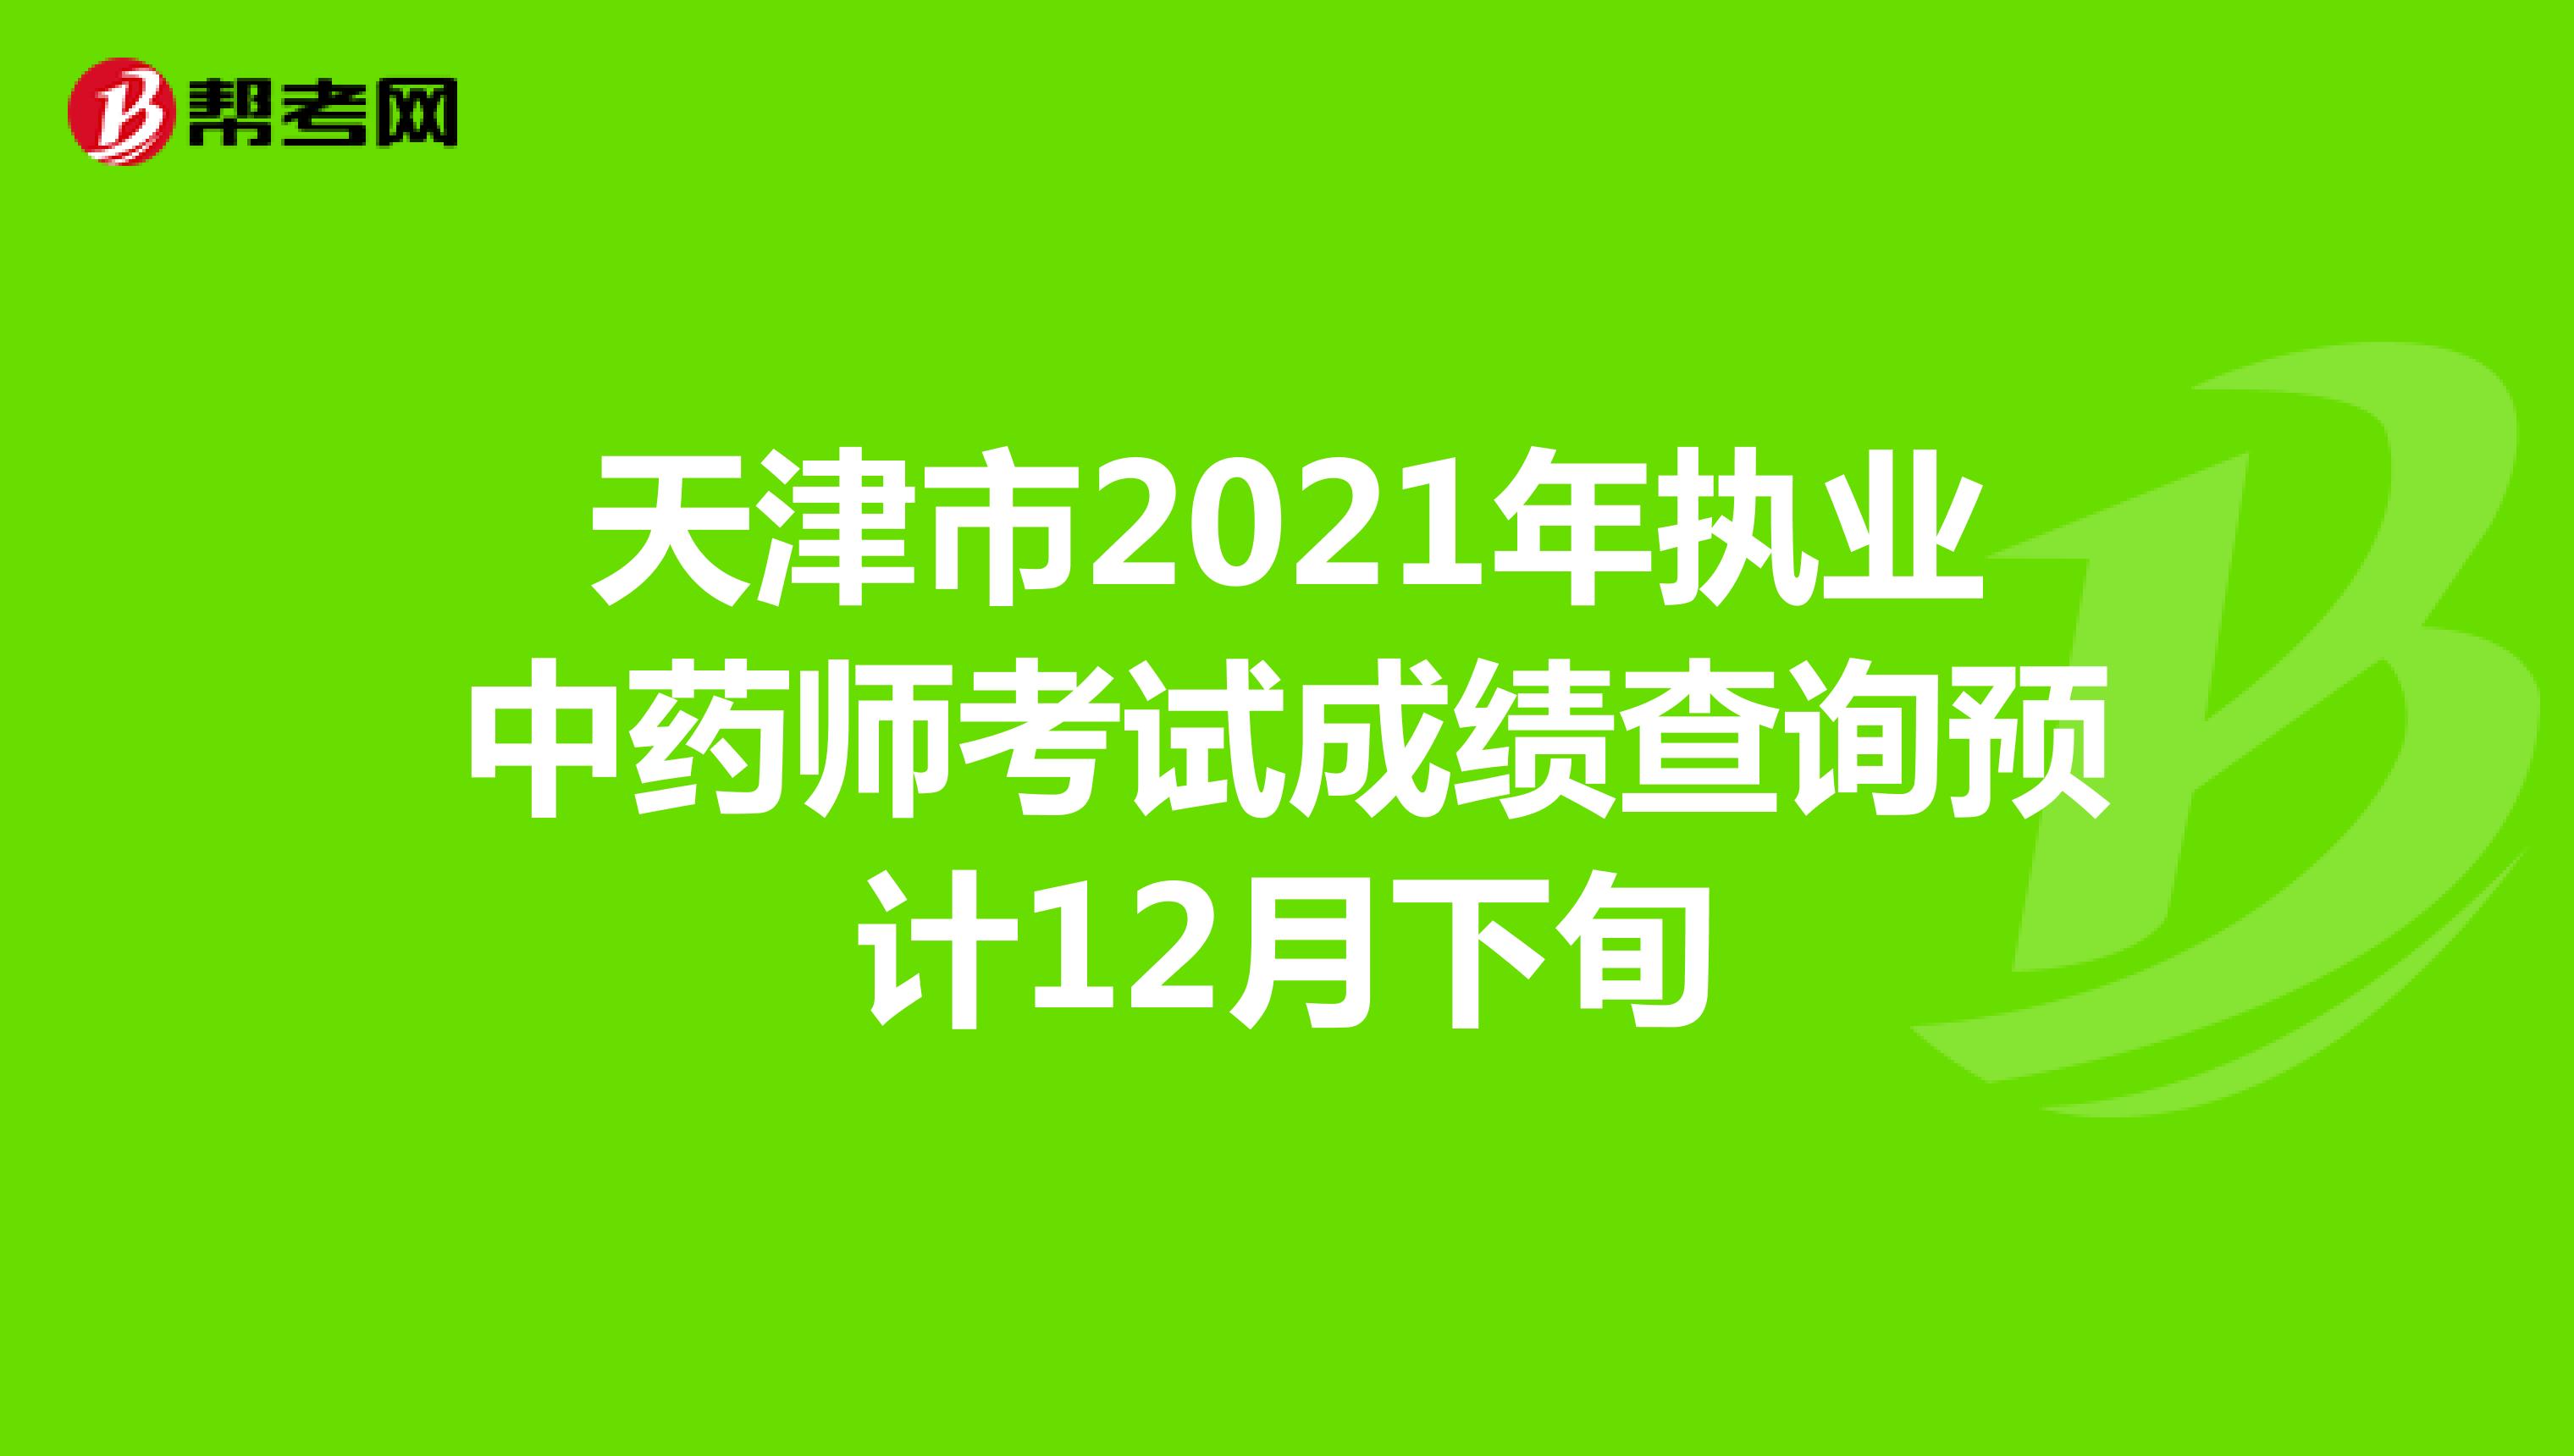 天津市2021年执业中药师考试成绩查询预计12月下旬